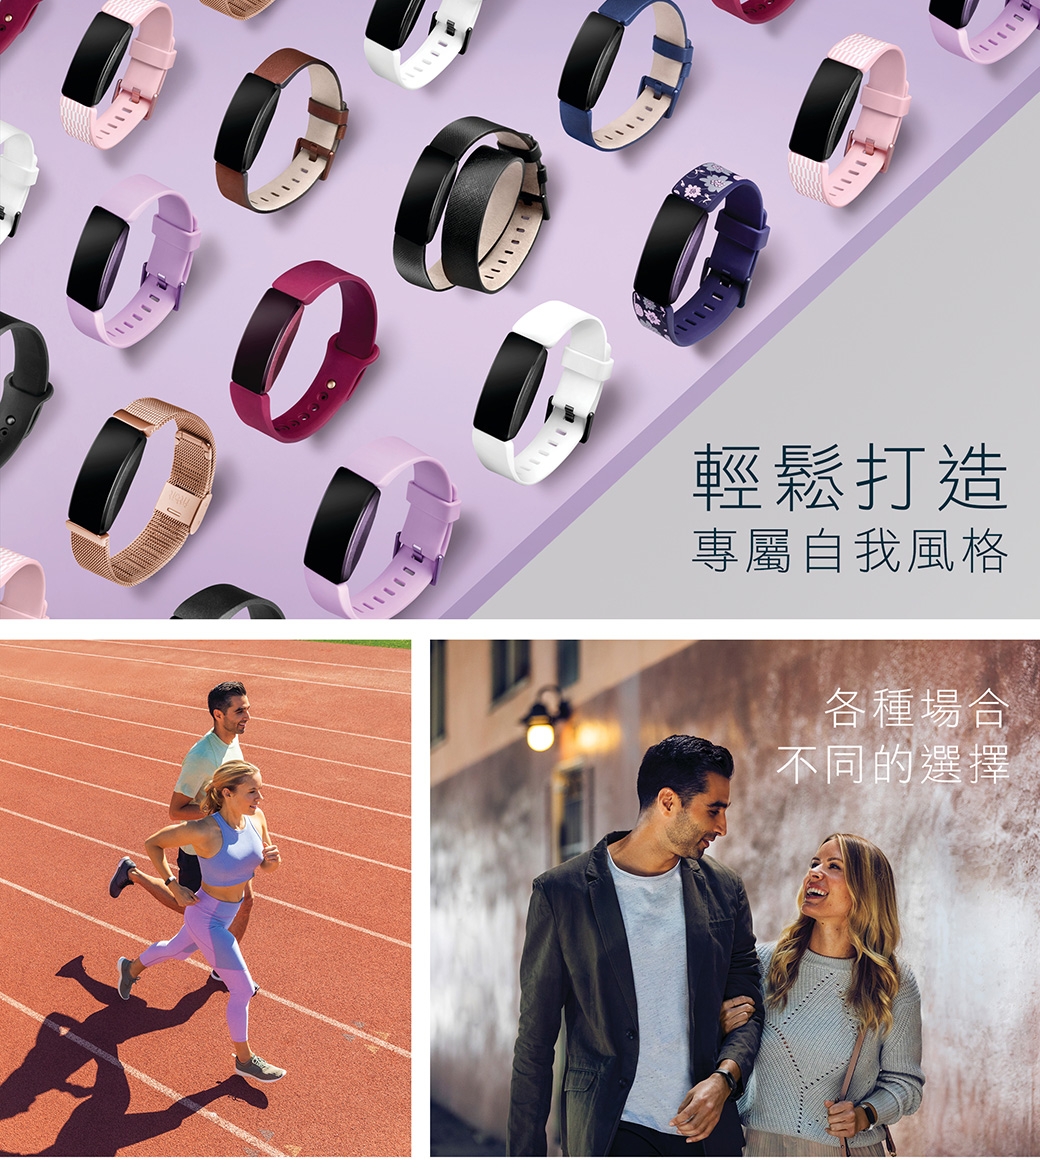 Fitbit Inspire/Inspire HR 不鏽鋼錶帶